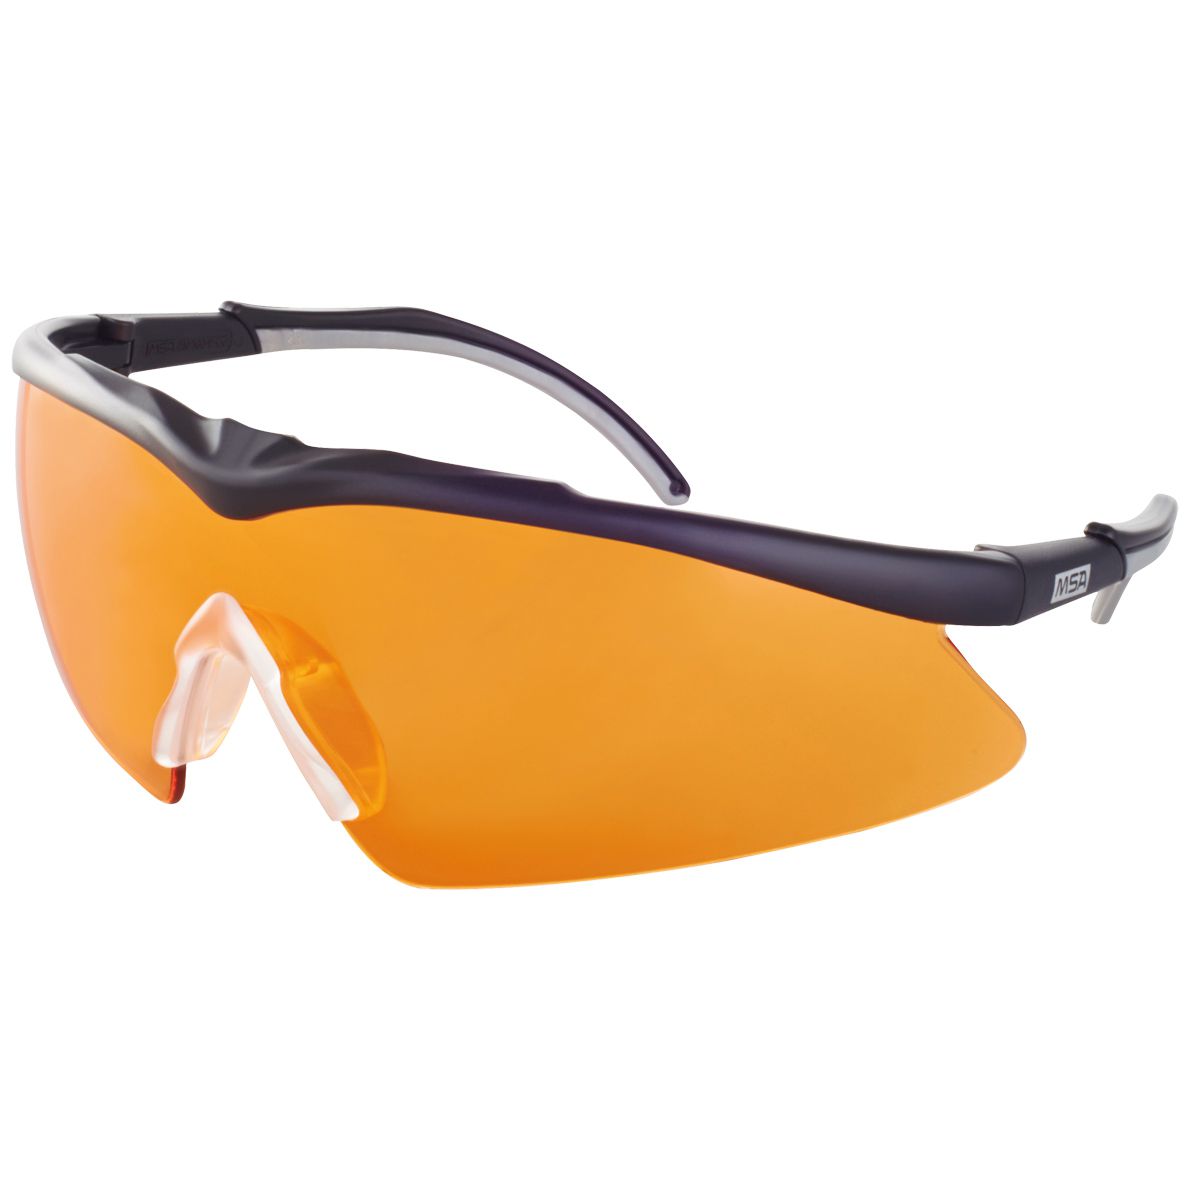 20 x Schutzbrille Arbeitsbrille Orange/Schwarz EN 166 Arbeitsschutzbrille 